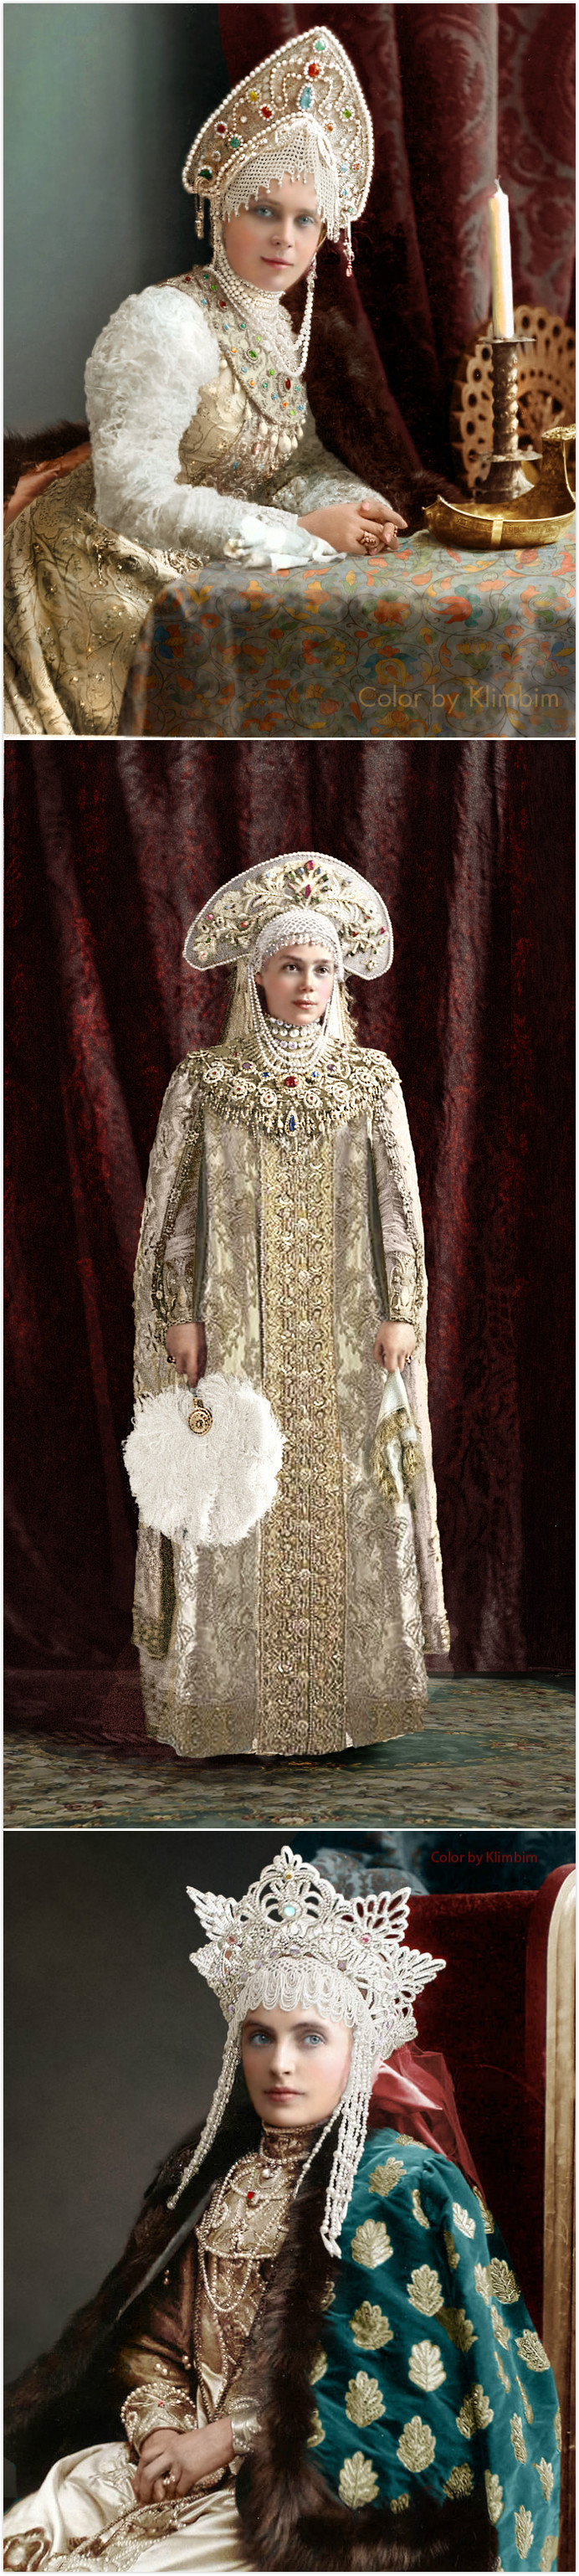 一场盛典,所有到场贵族全部身着罗曼诺夫王朝初年的古式传统宫廷着装